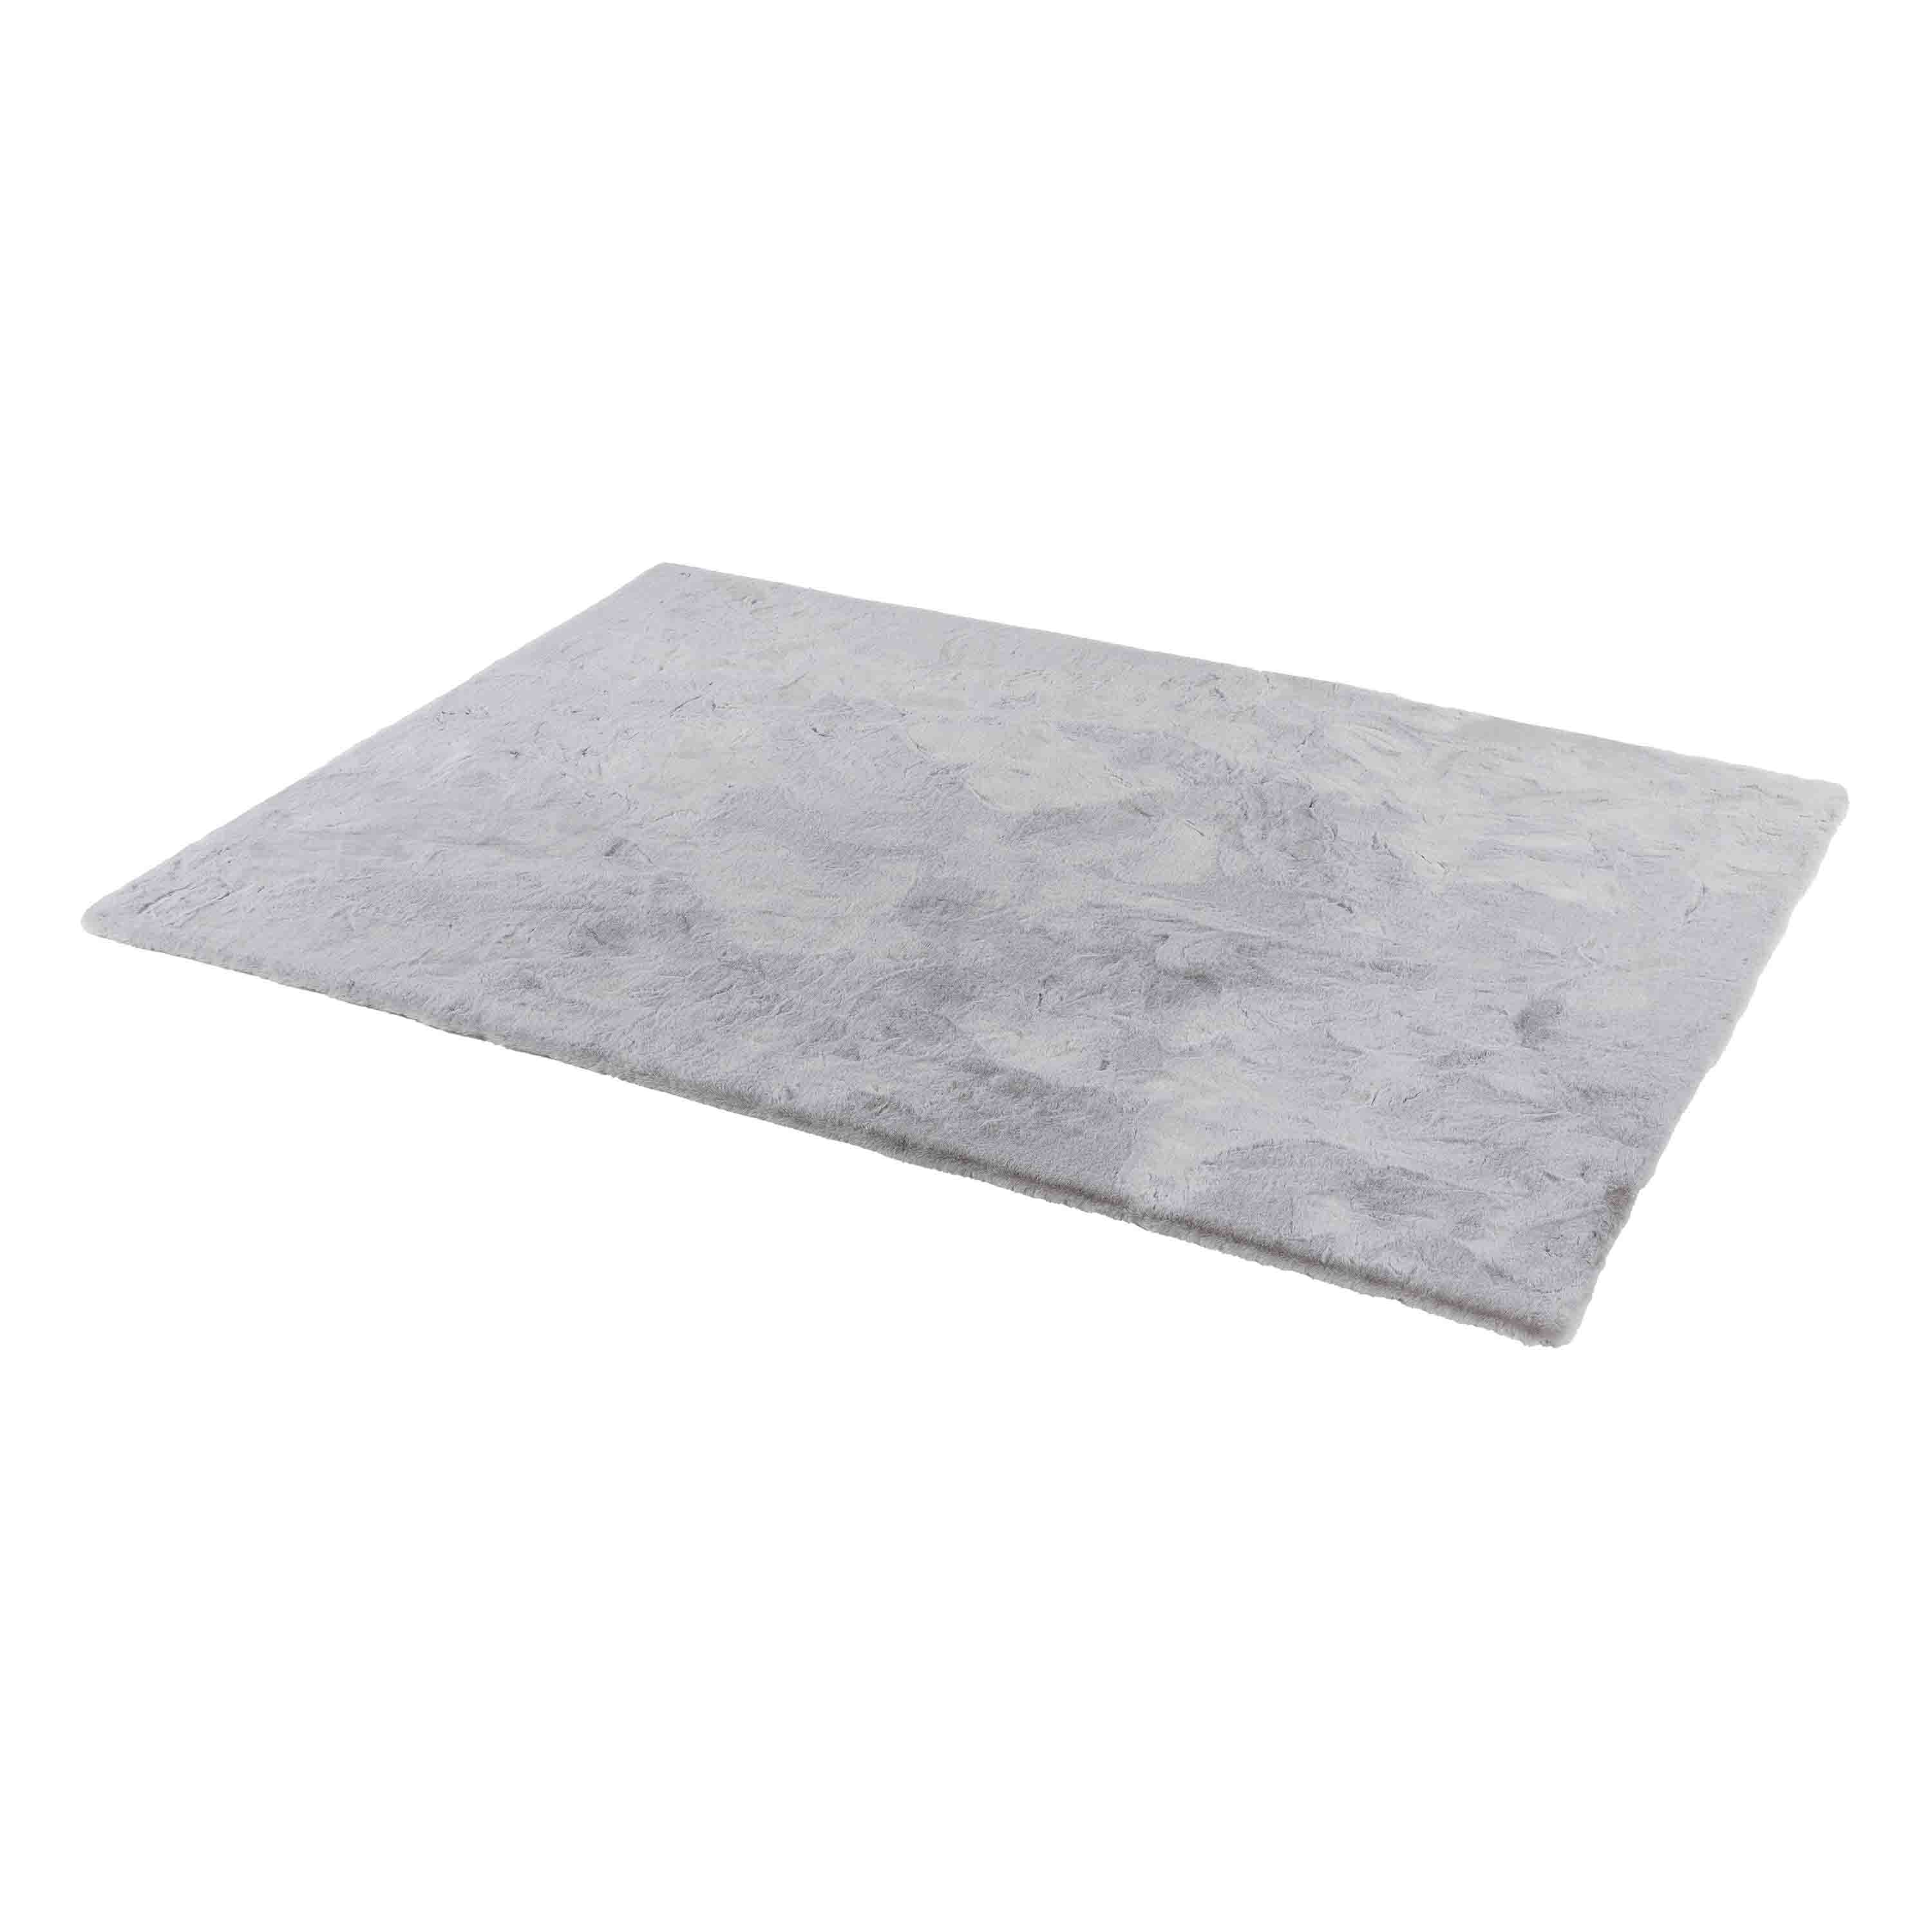 Schöner Wohnen Kollektion Teppich Tender 120x180 cm Silber